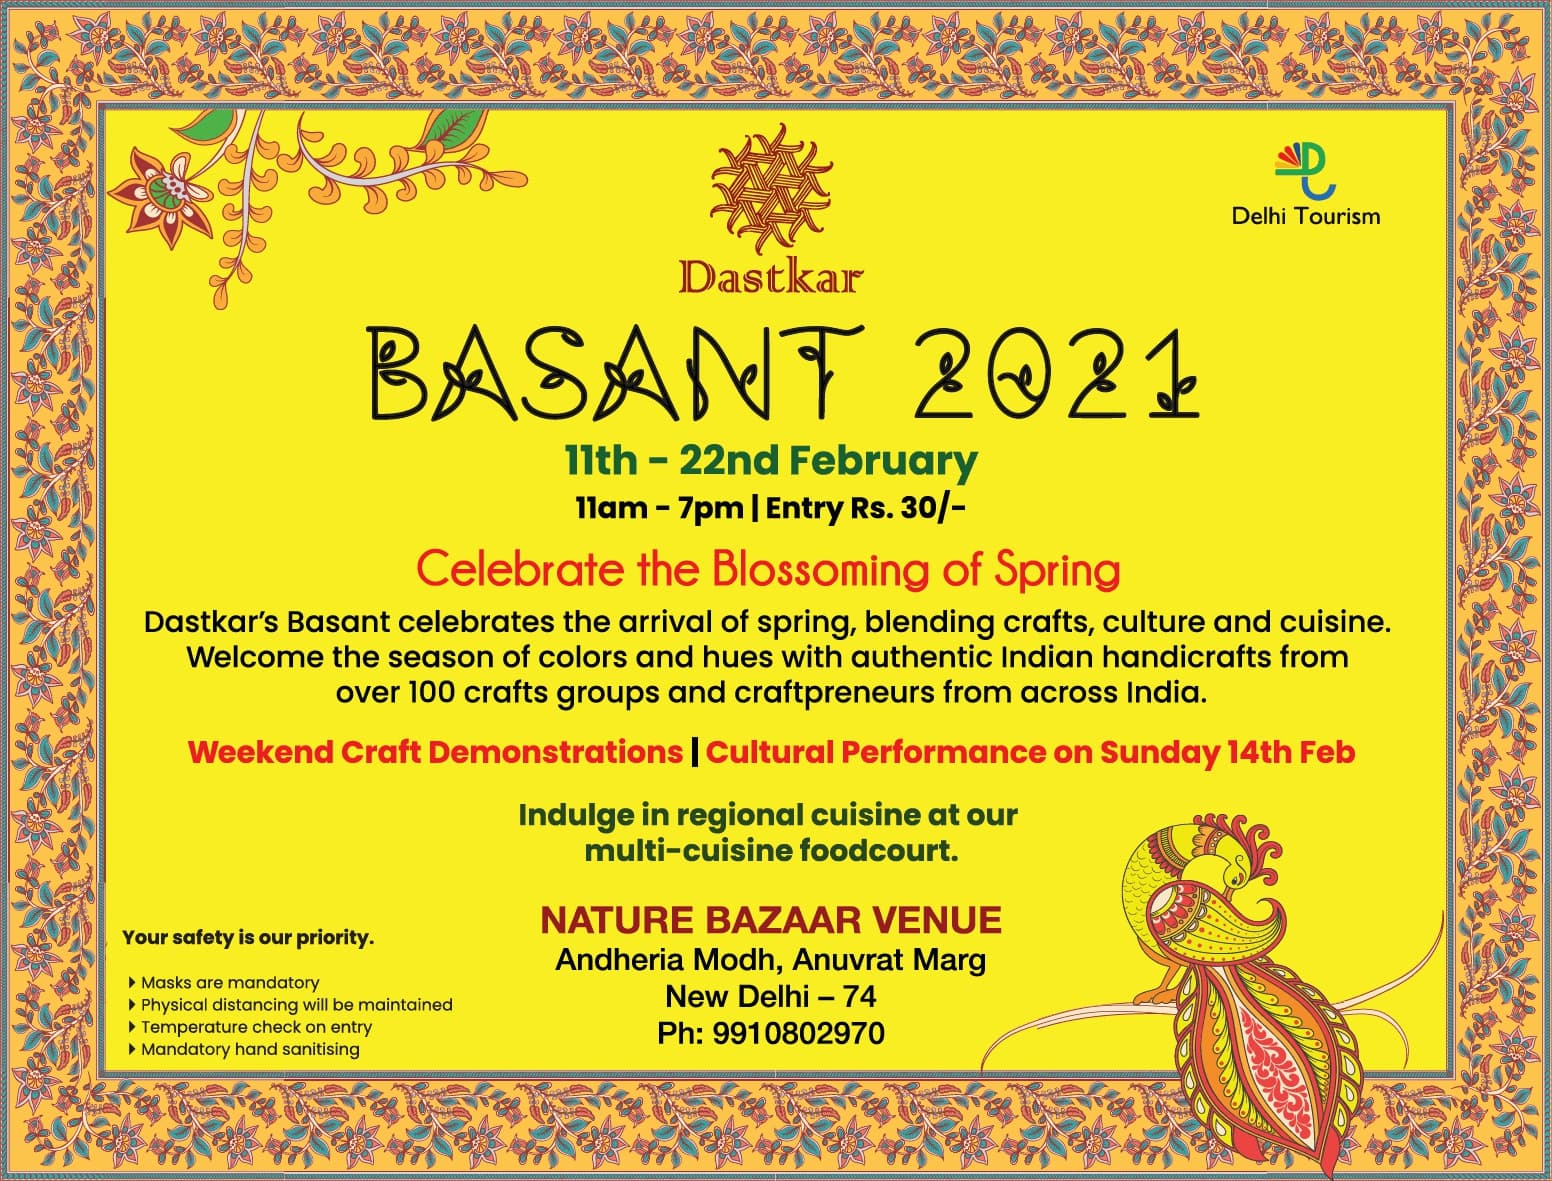 dastkar-basant-2021-delhi-tourism-ad-delhi-times-13-02-2021